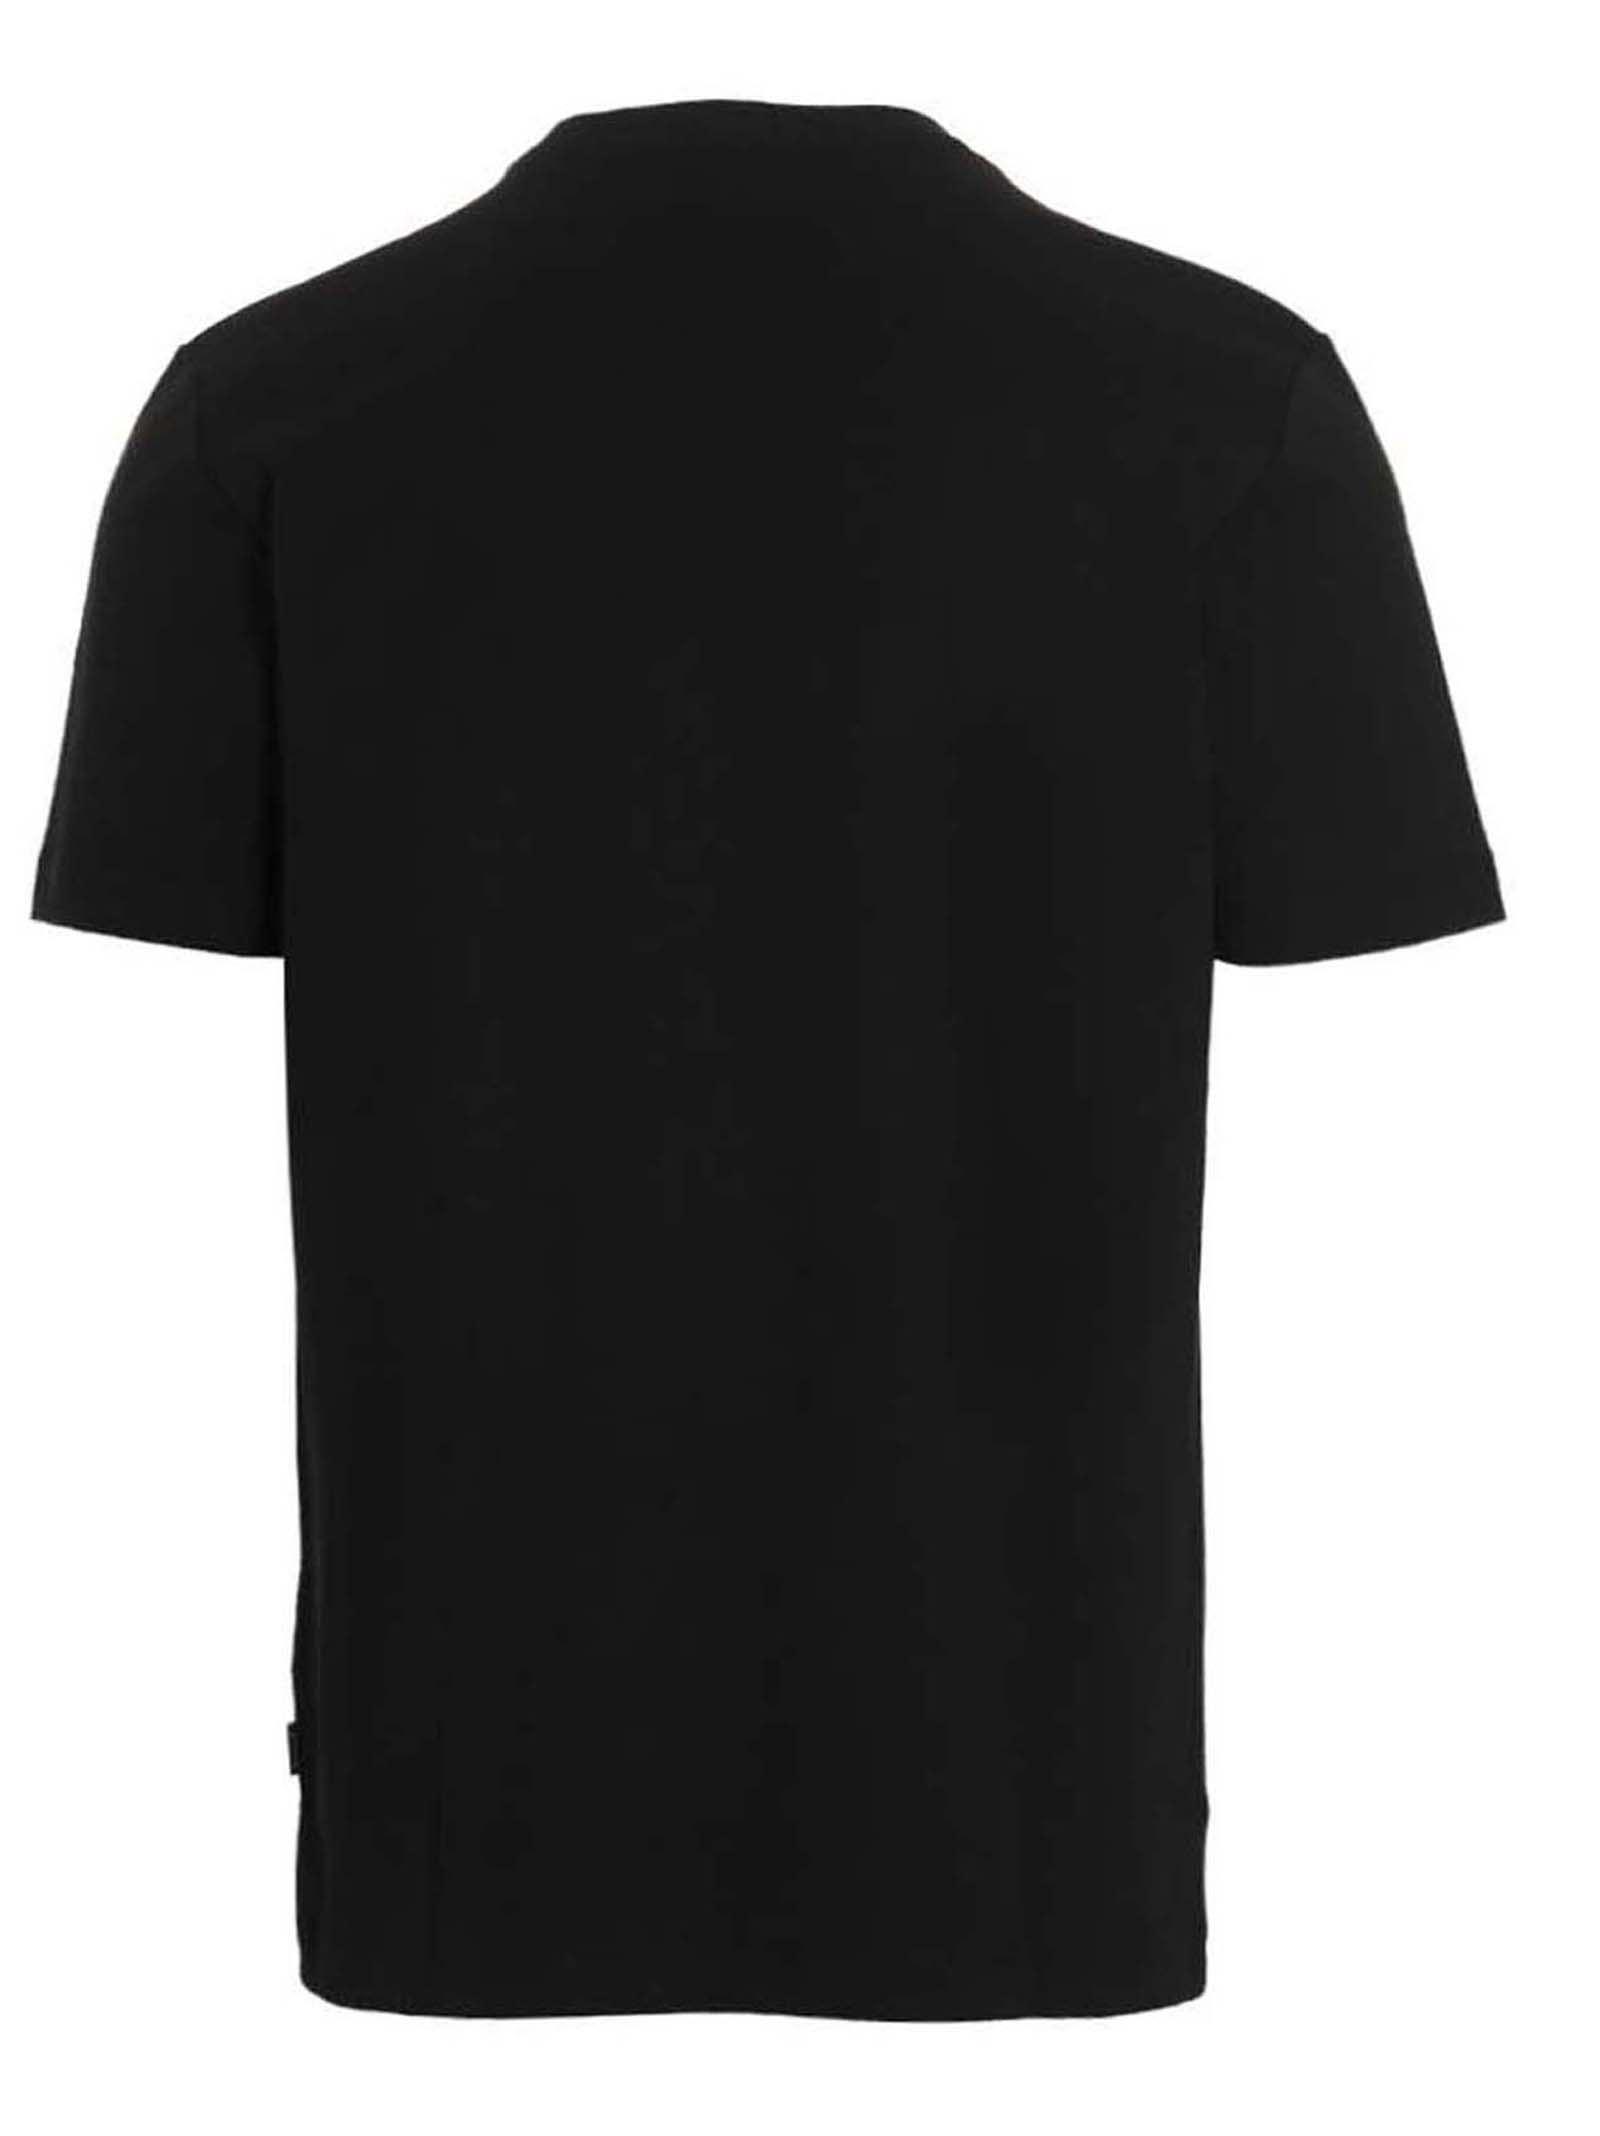 BOSS by HUGO BOSS Tiburt T-shirt in Black for Men | Lyst